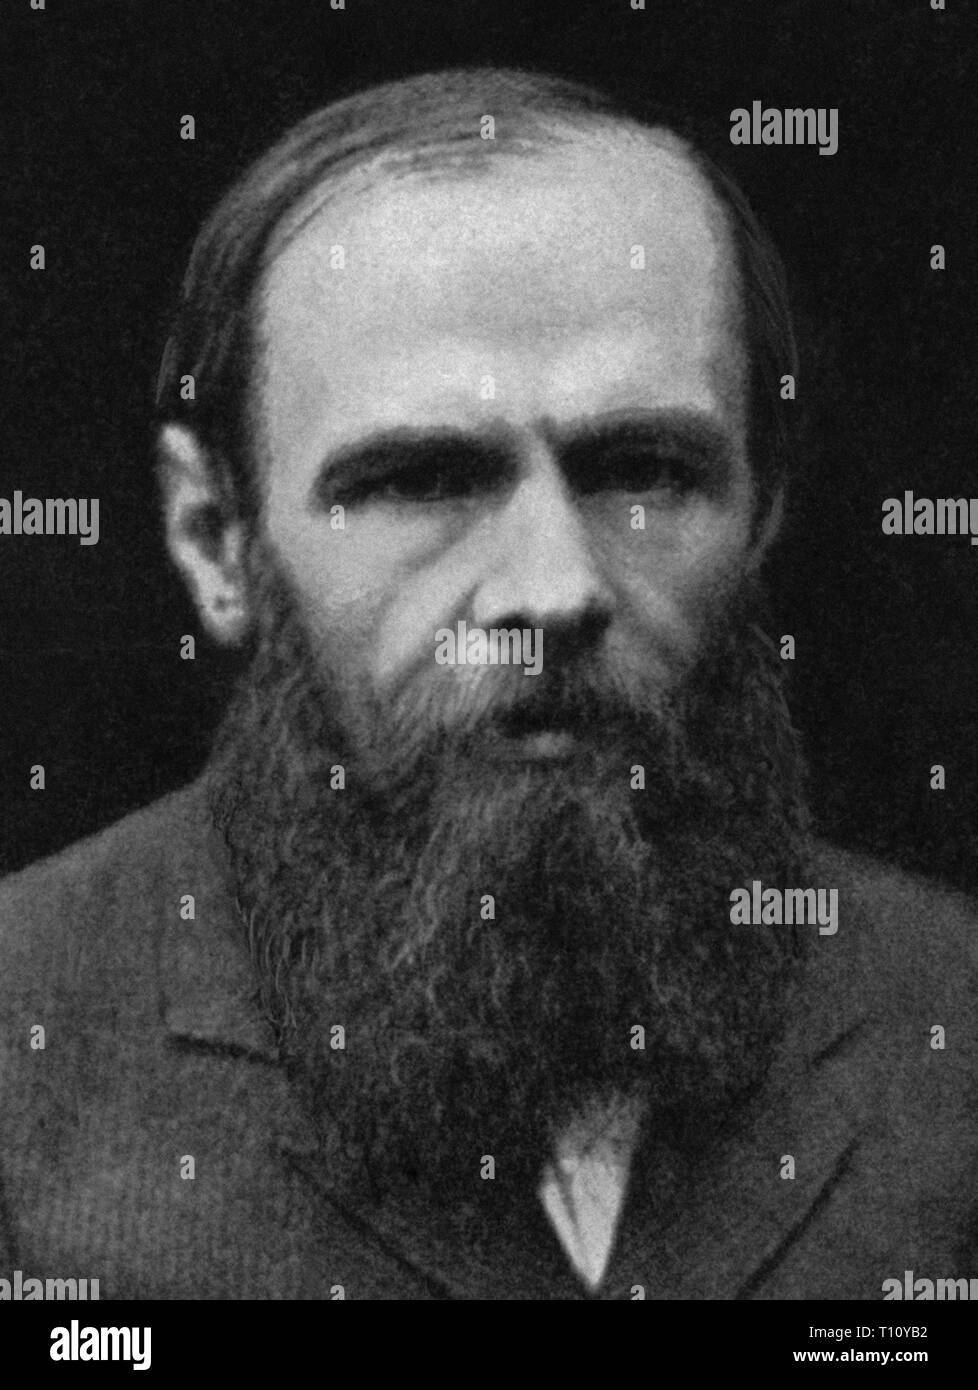 Fëdor Mikhailovic Dostoevskij, talvolta traslitterato Dostoevskij, era un romanziere russo breve storia scrittore, saggista, giornalista e filosofo. Scansionata da materiale di immagine negli archivi della stampa Ritratto - Servizio (ex premere ritratto Bureau). Foto Stock